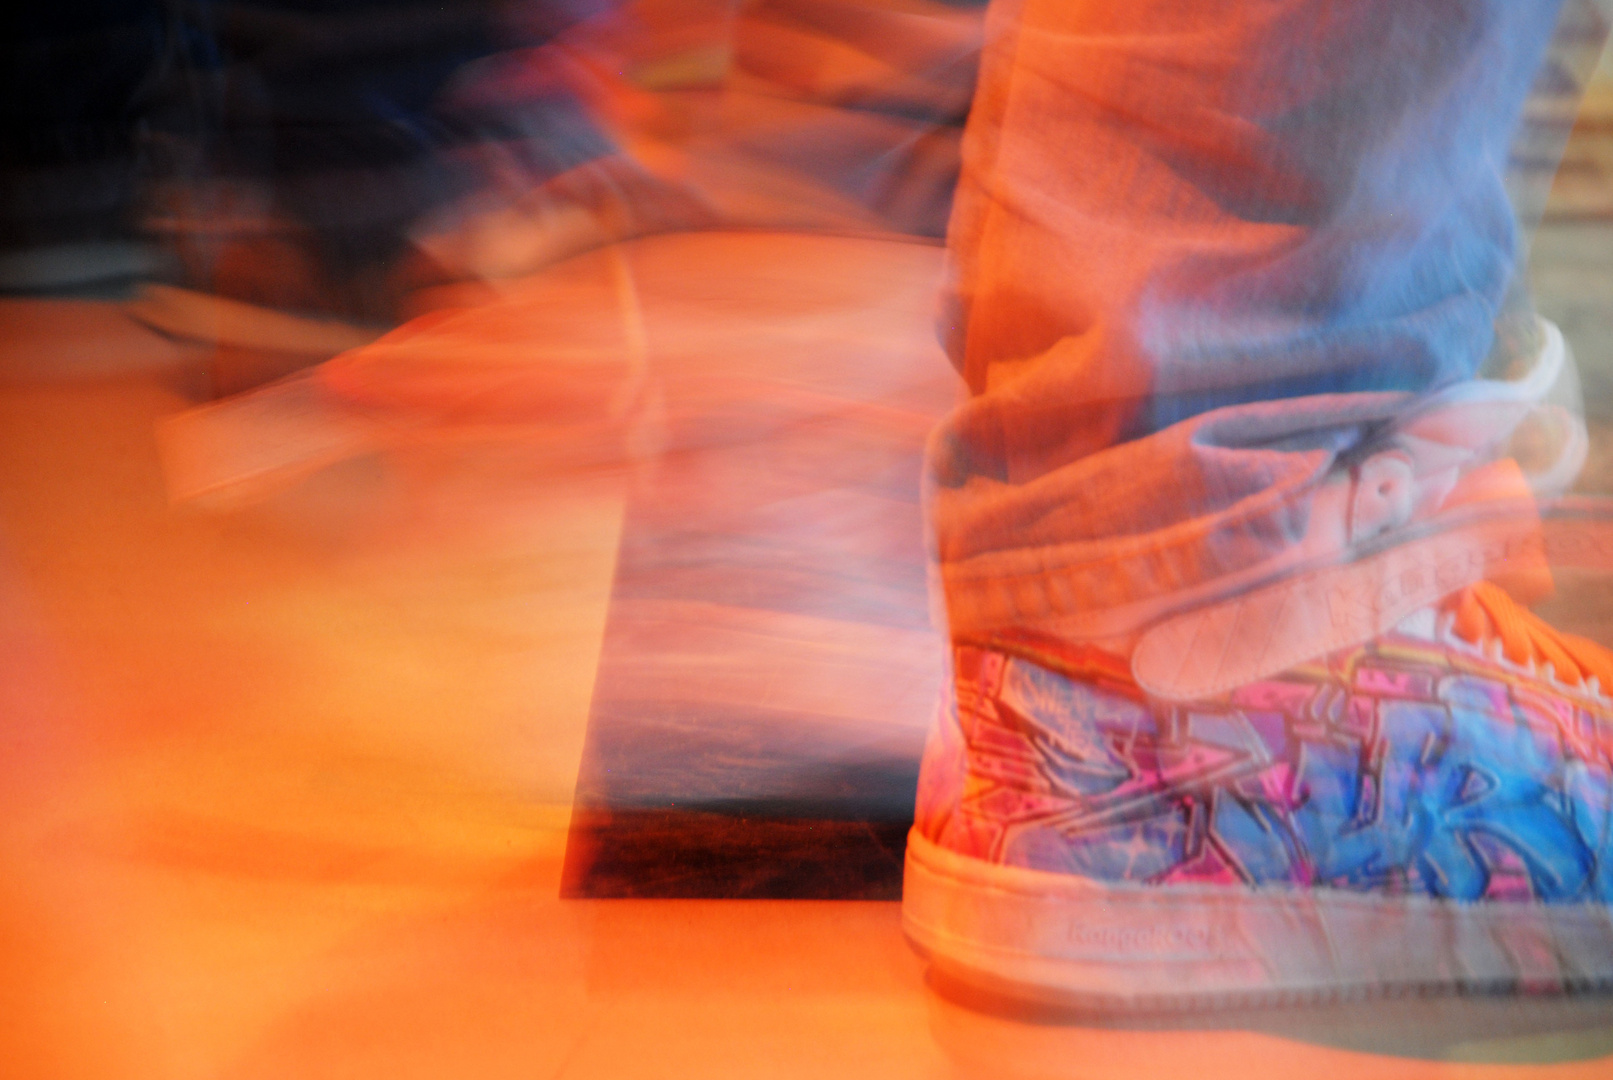 _hip hop dancing sneakers